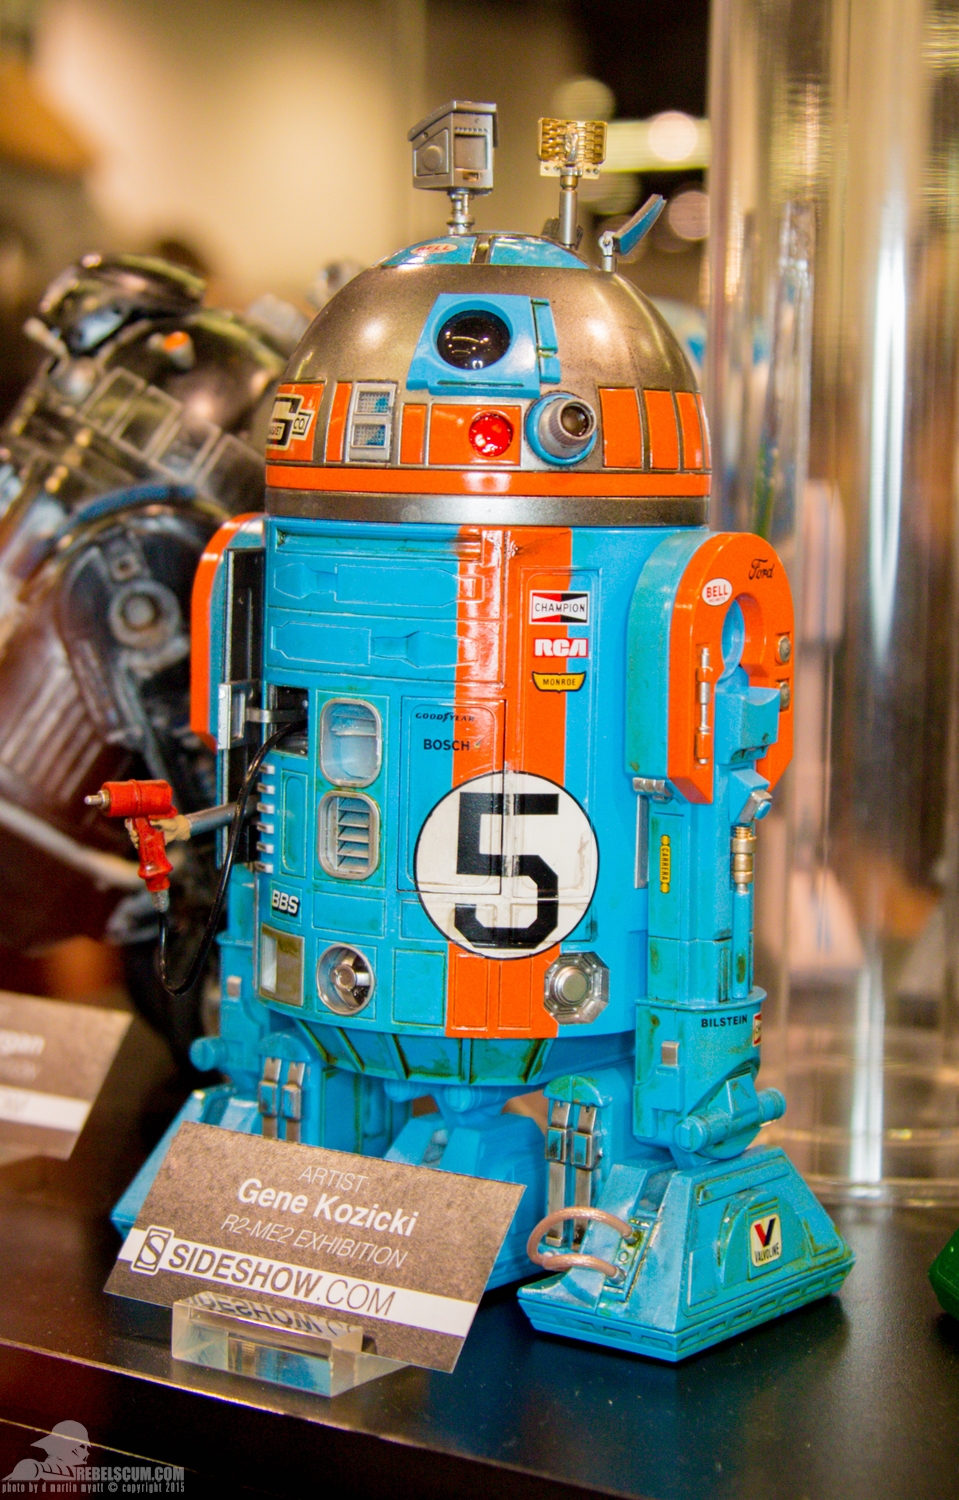 Star-Wars-Celebration-Anaheim-2015-Sideshow-R2-Me2-Exhibit-052.jpg